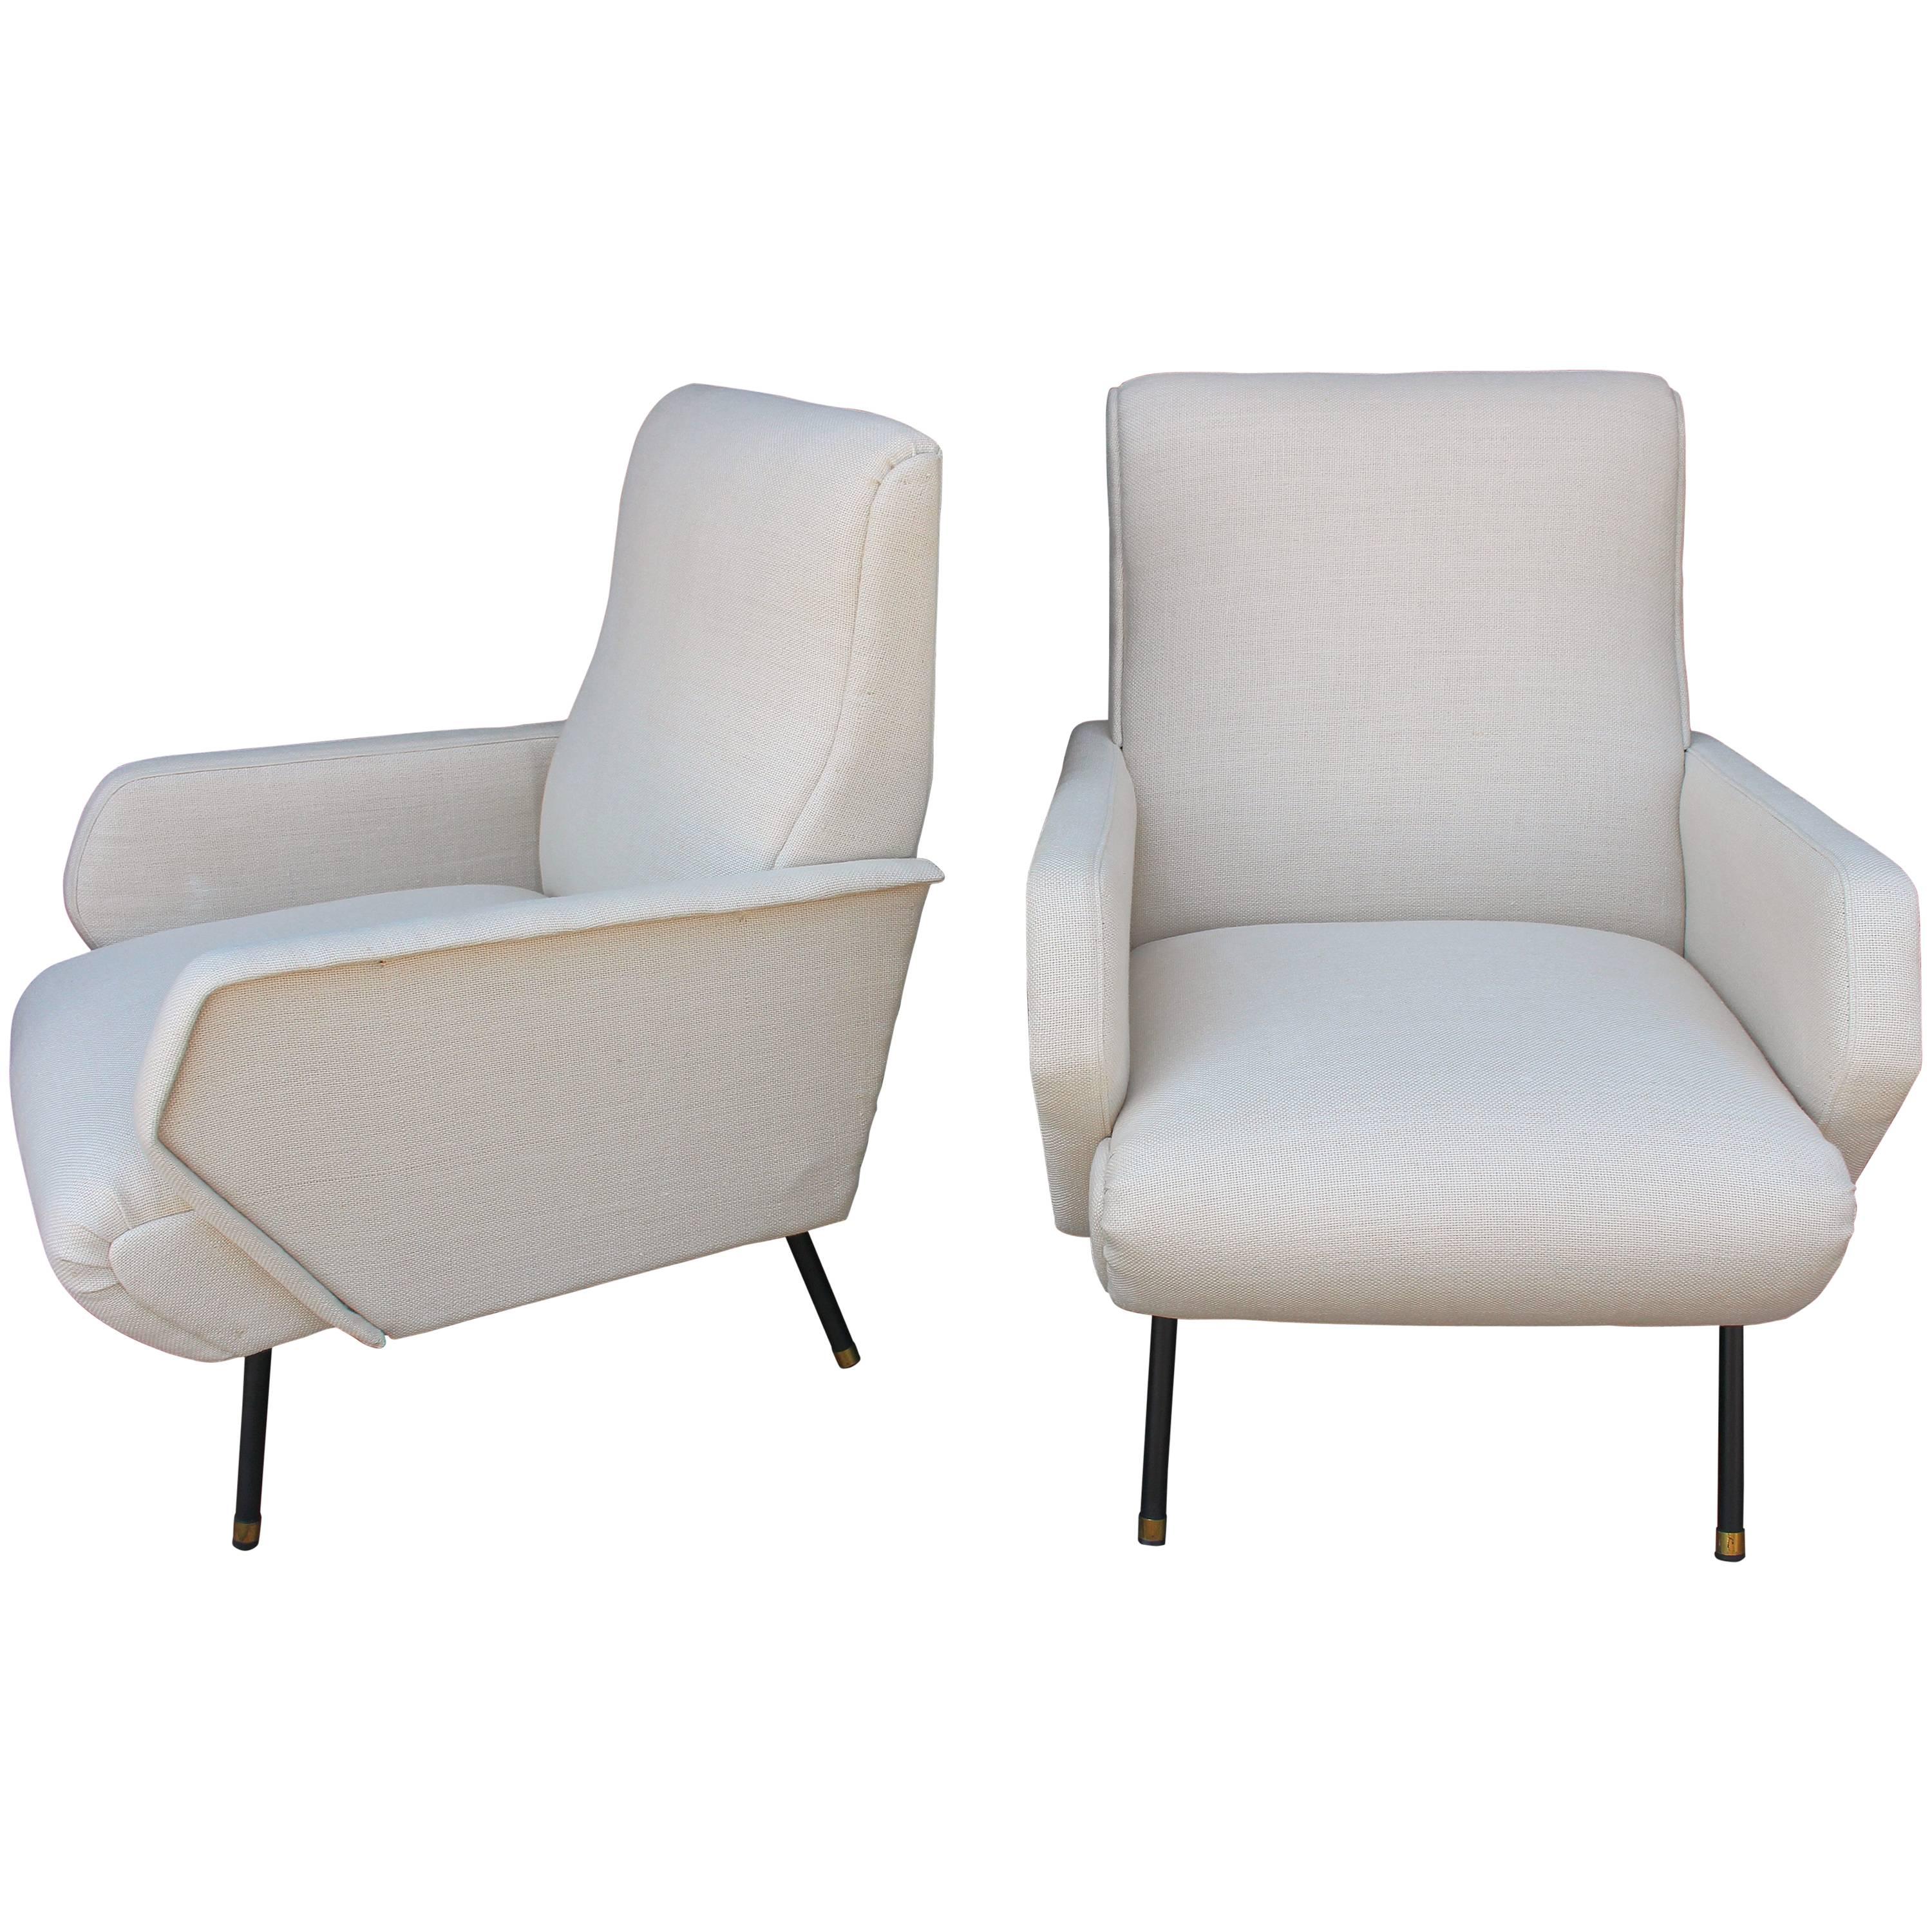 1950s Italian Pair of Chairs